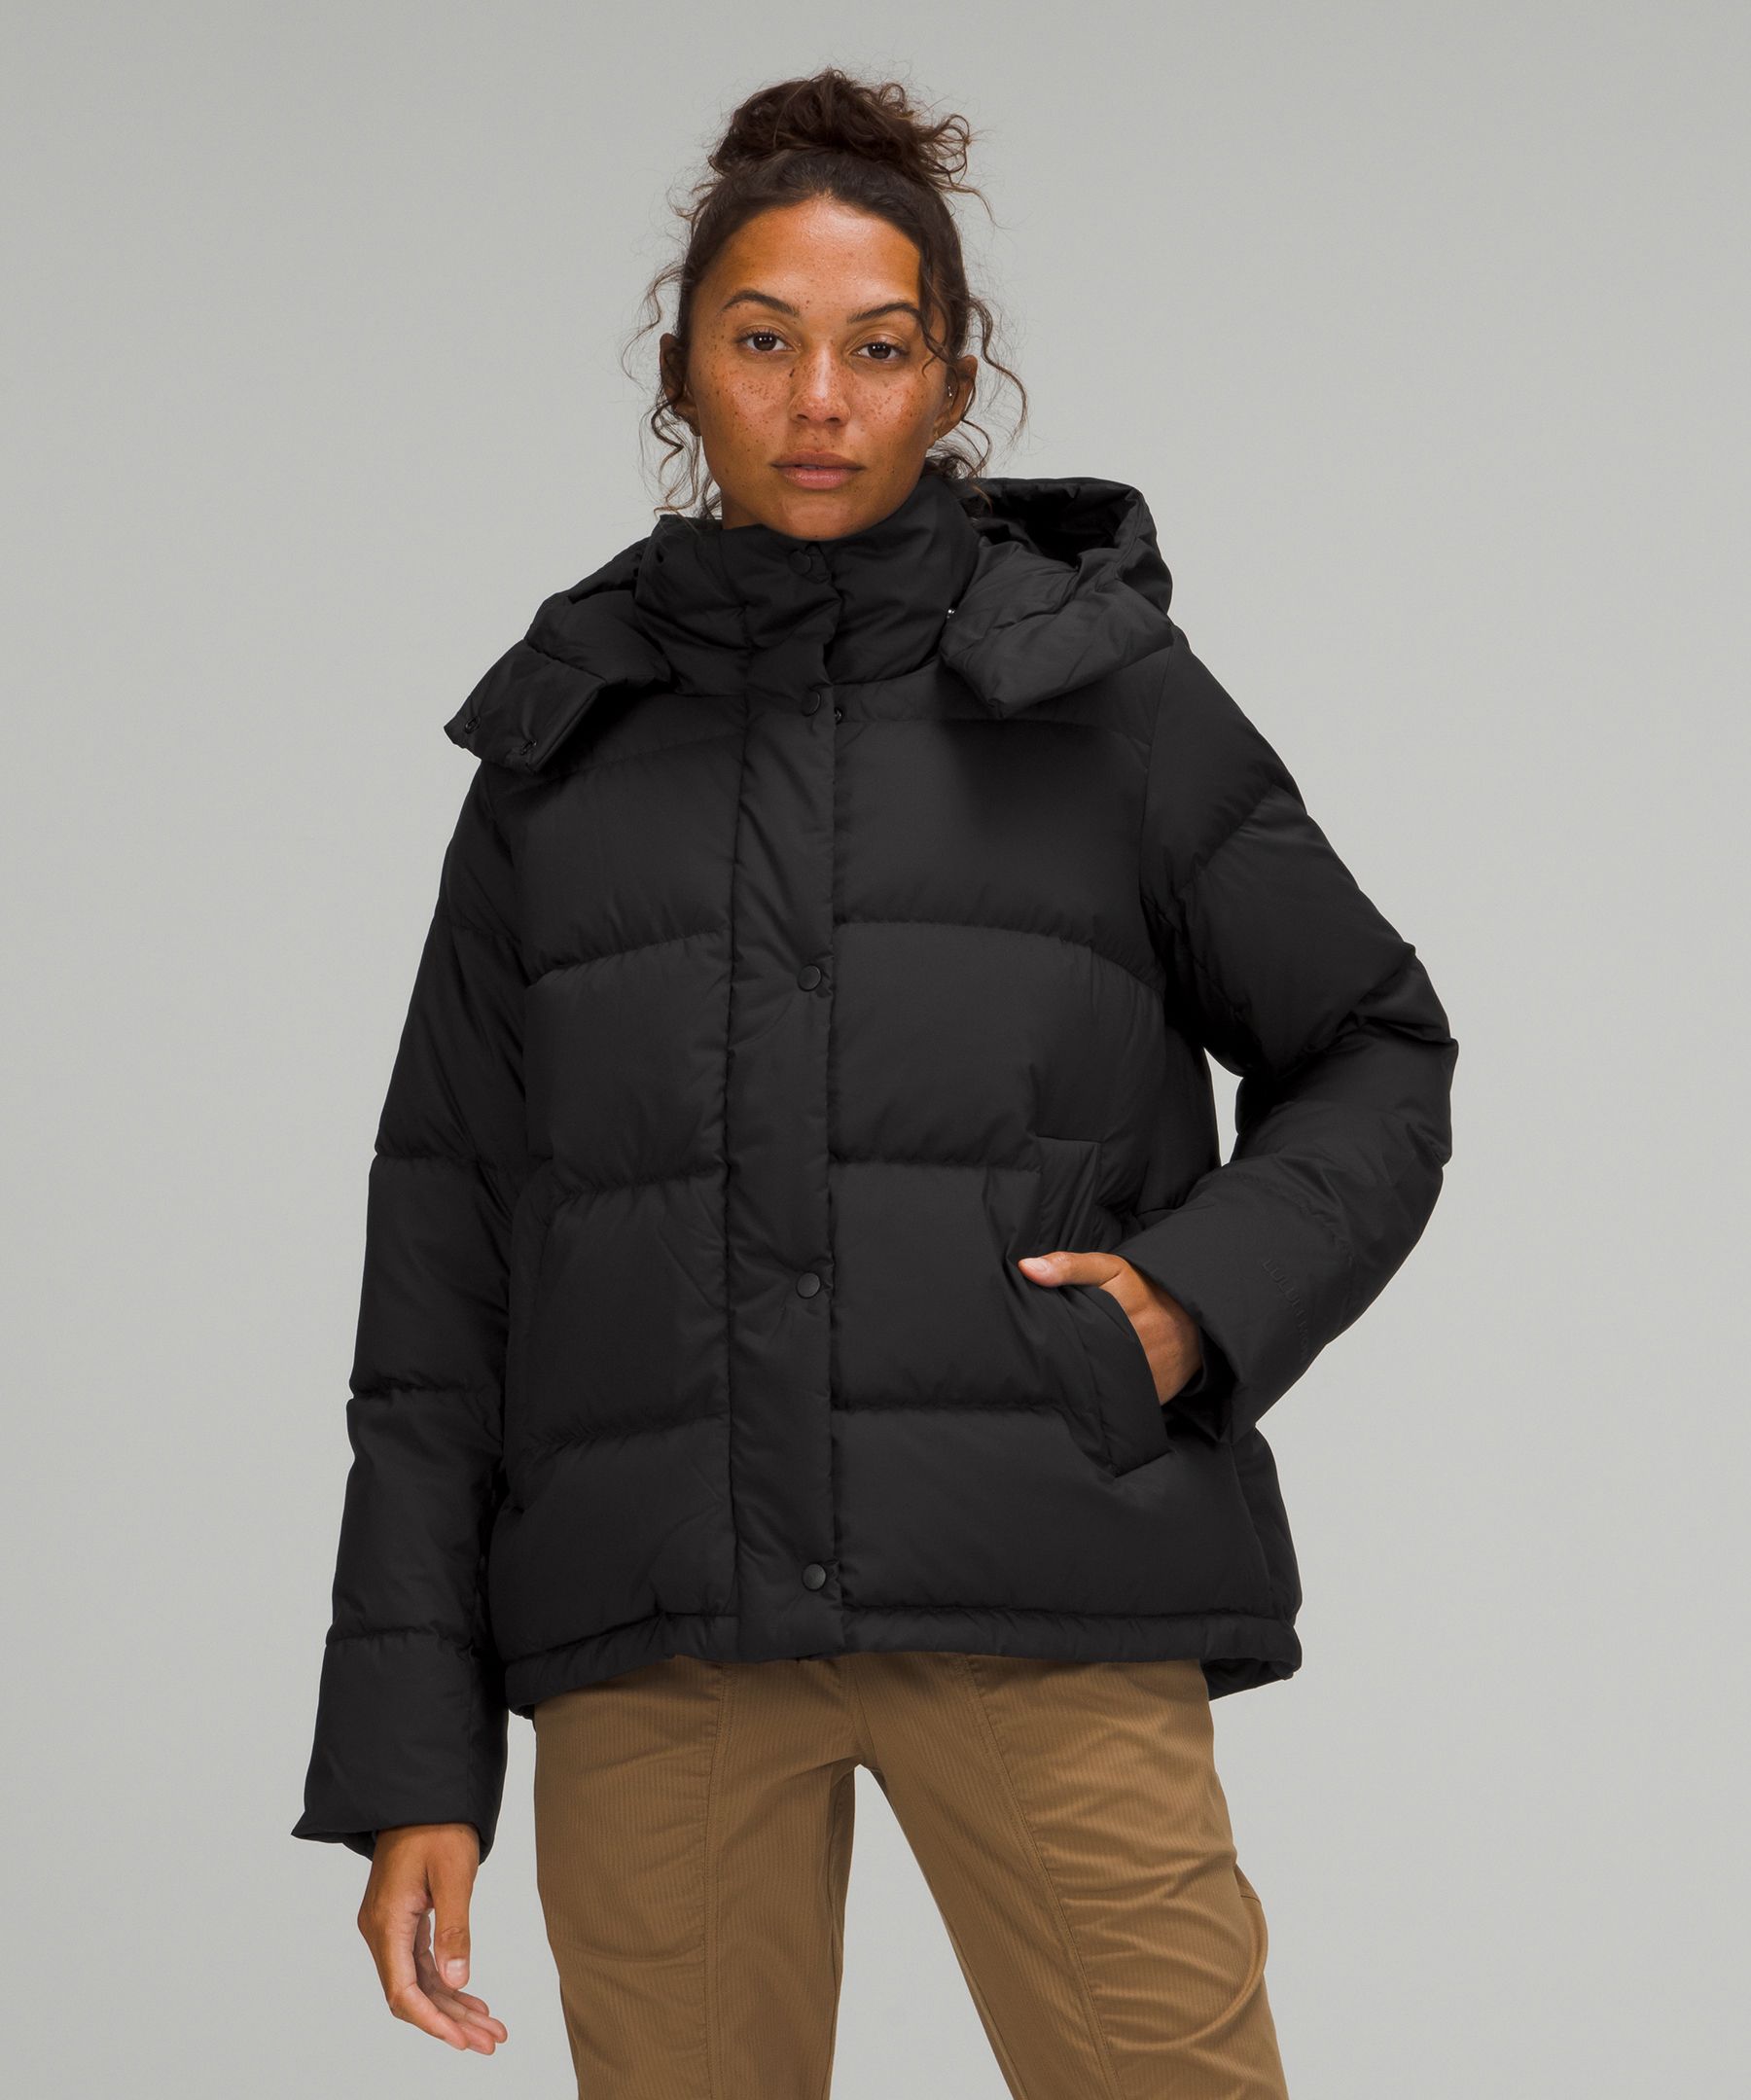 Wunder Puff Jacket | Women's Coats & Jackets | lululemon